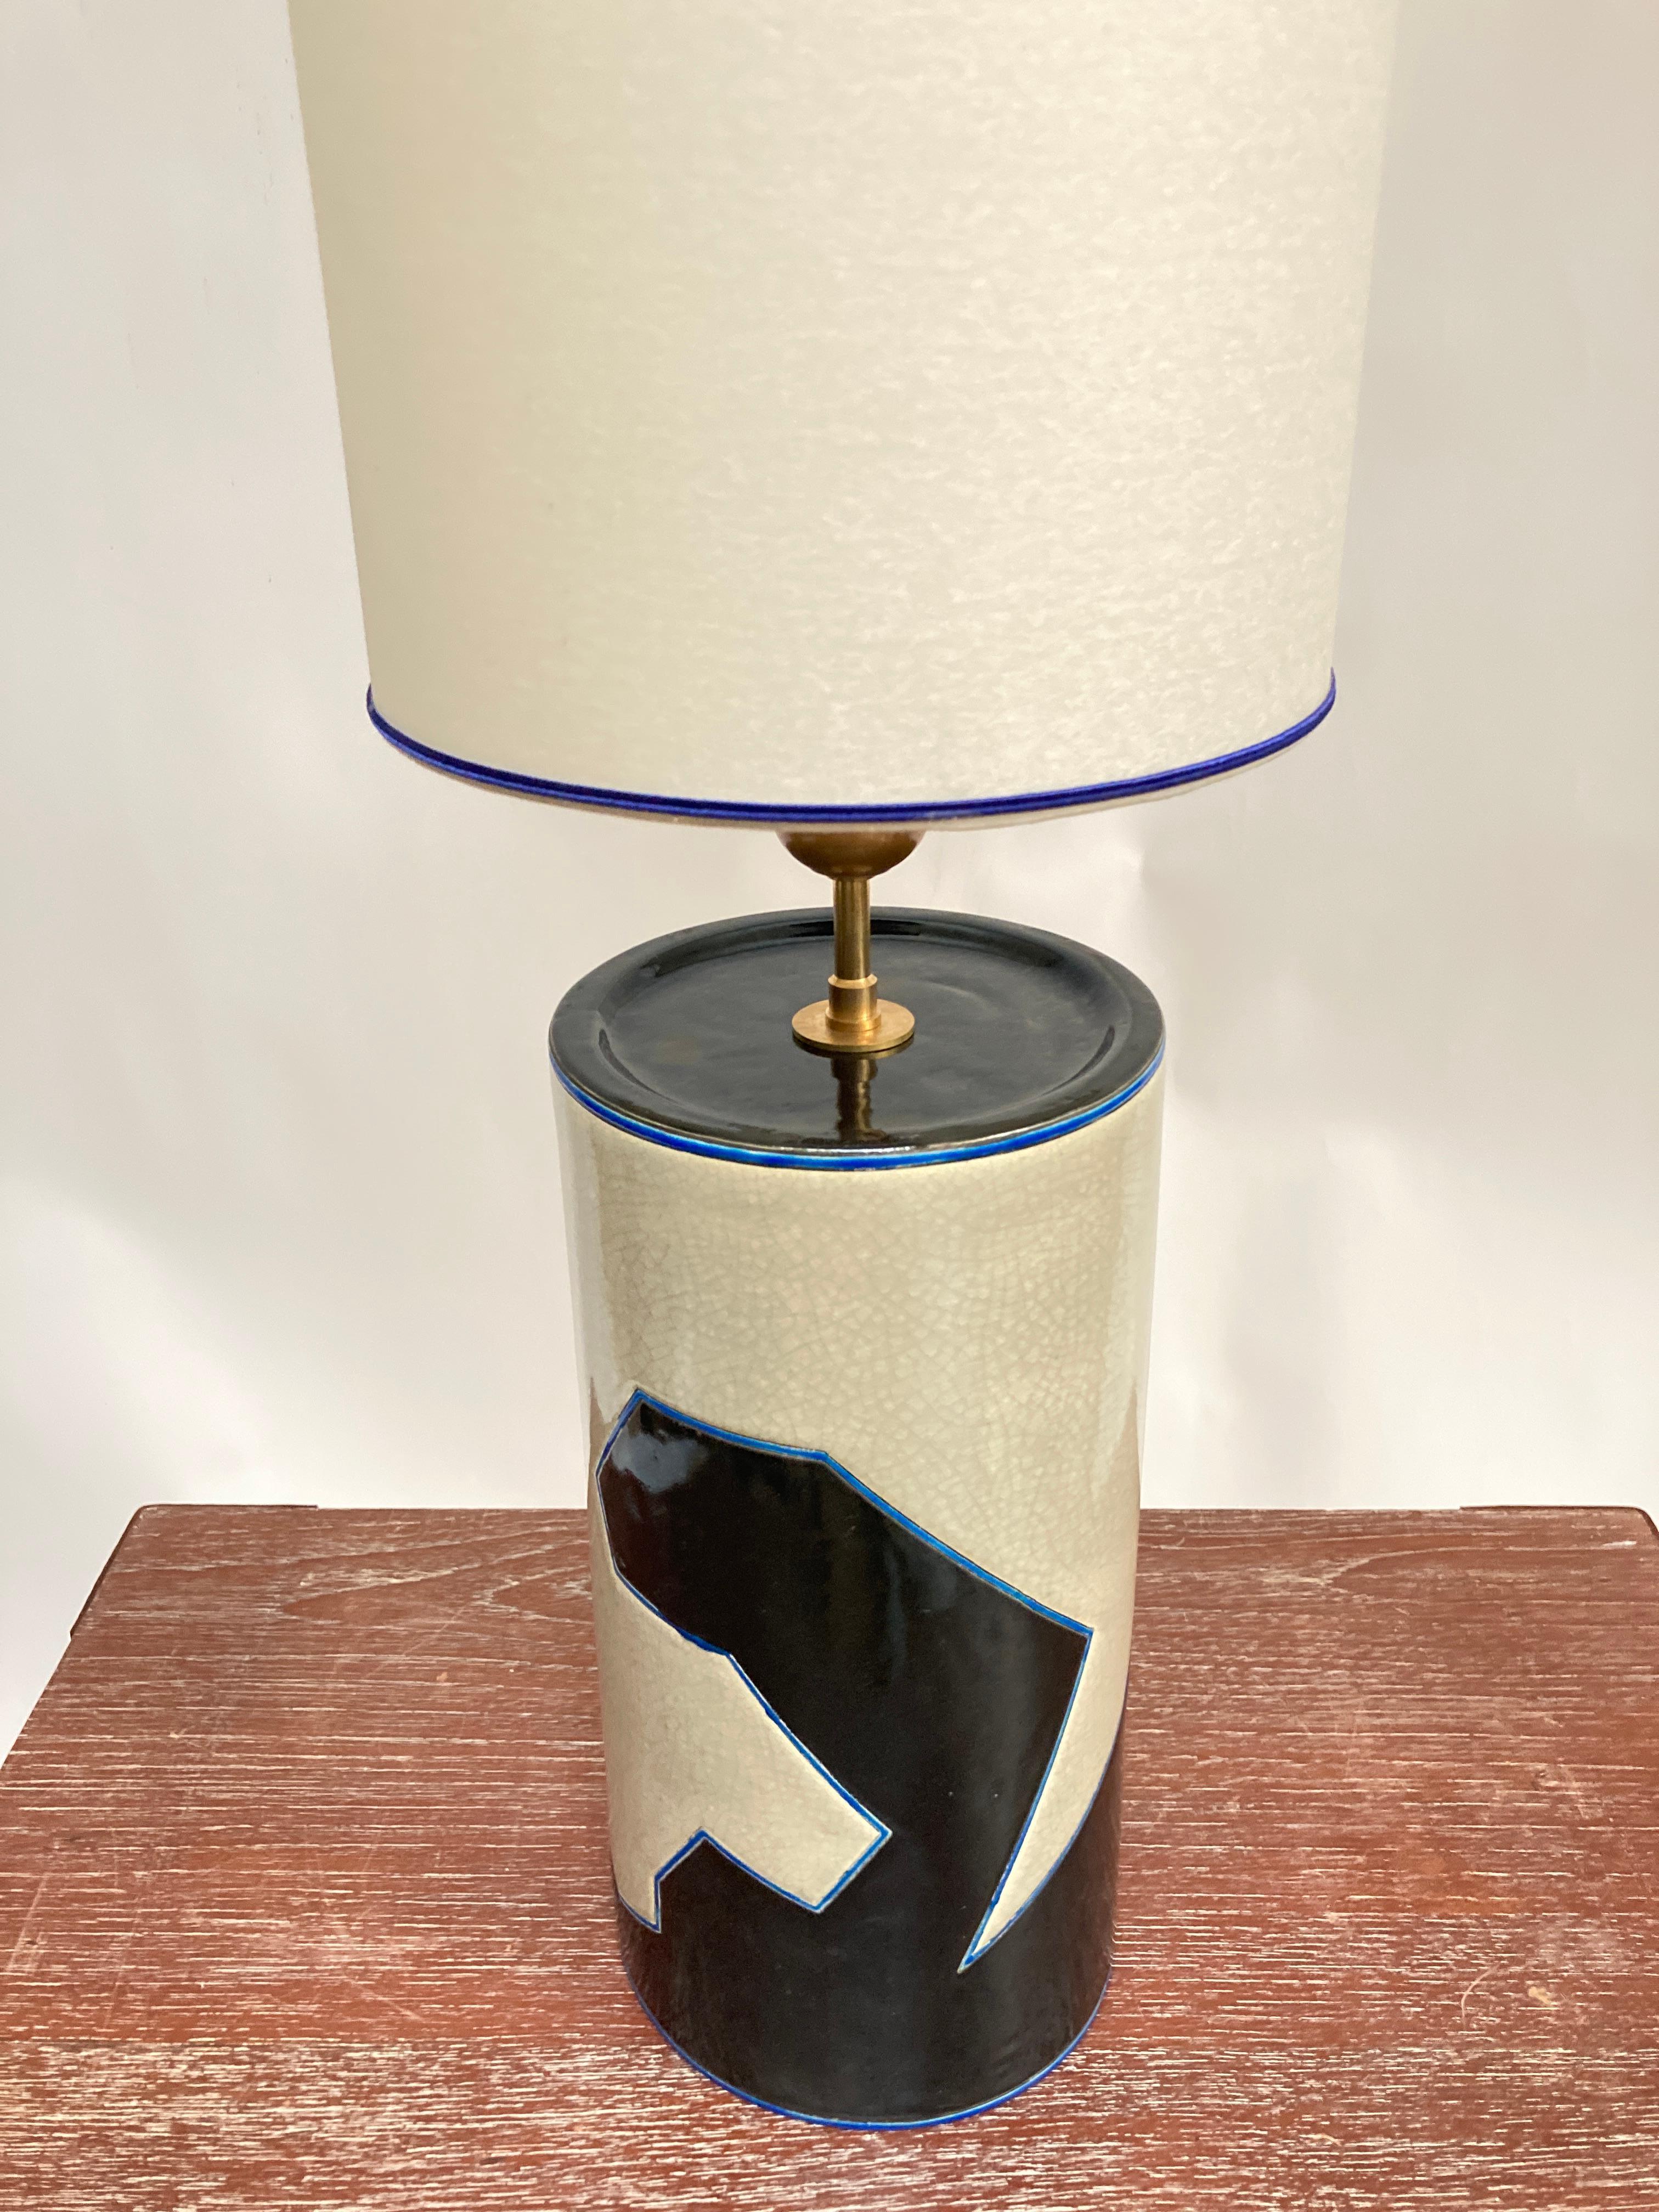 Rare lampe en céramique des années 1980 par Emaux de Longwy ( Nord Est de la France )
Dimensions données sans ombre
Pas d'abat-jour inclus